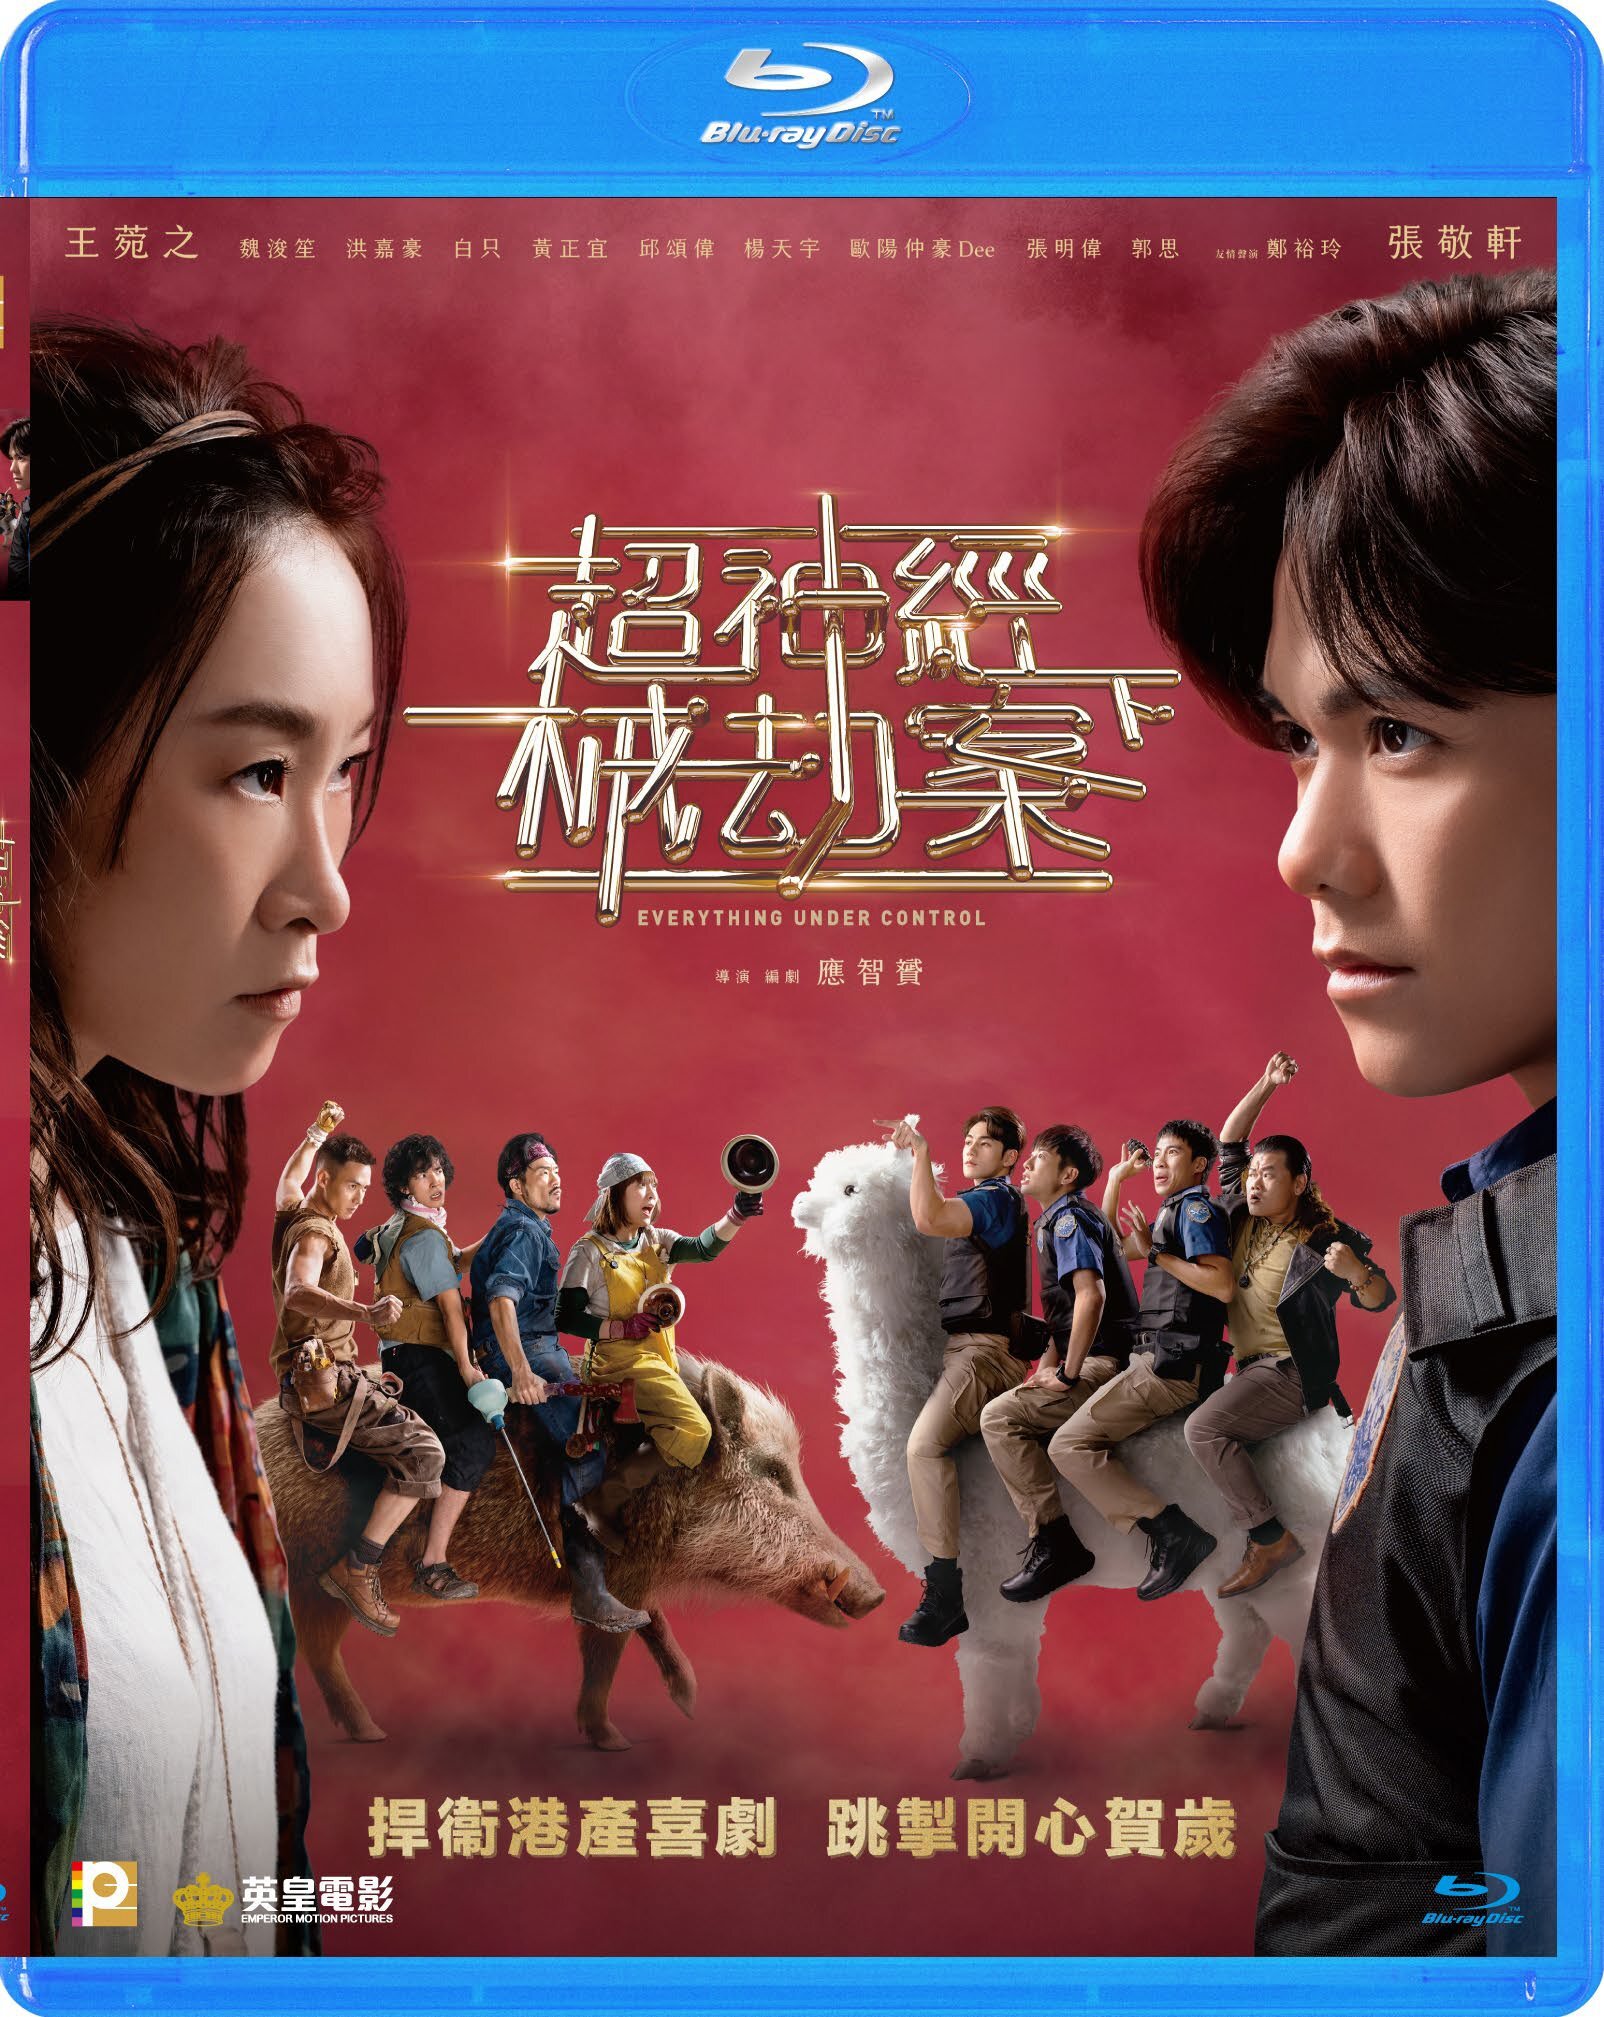 Everything Under Control Blu-ray (Chiu san ging haai gip on haa 